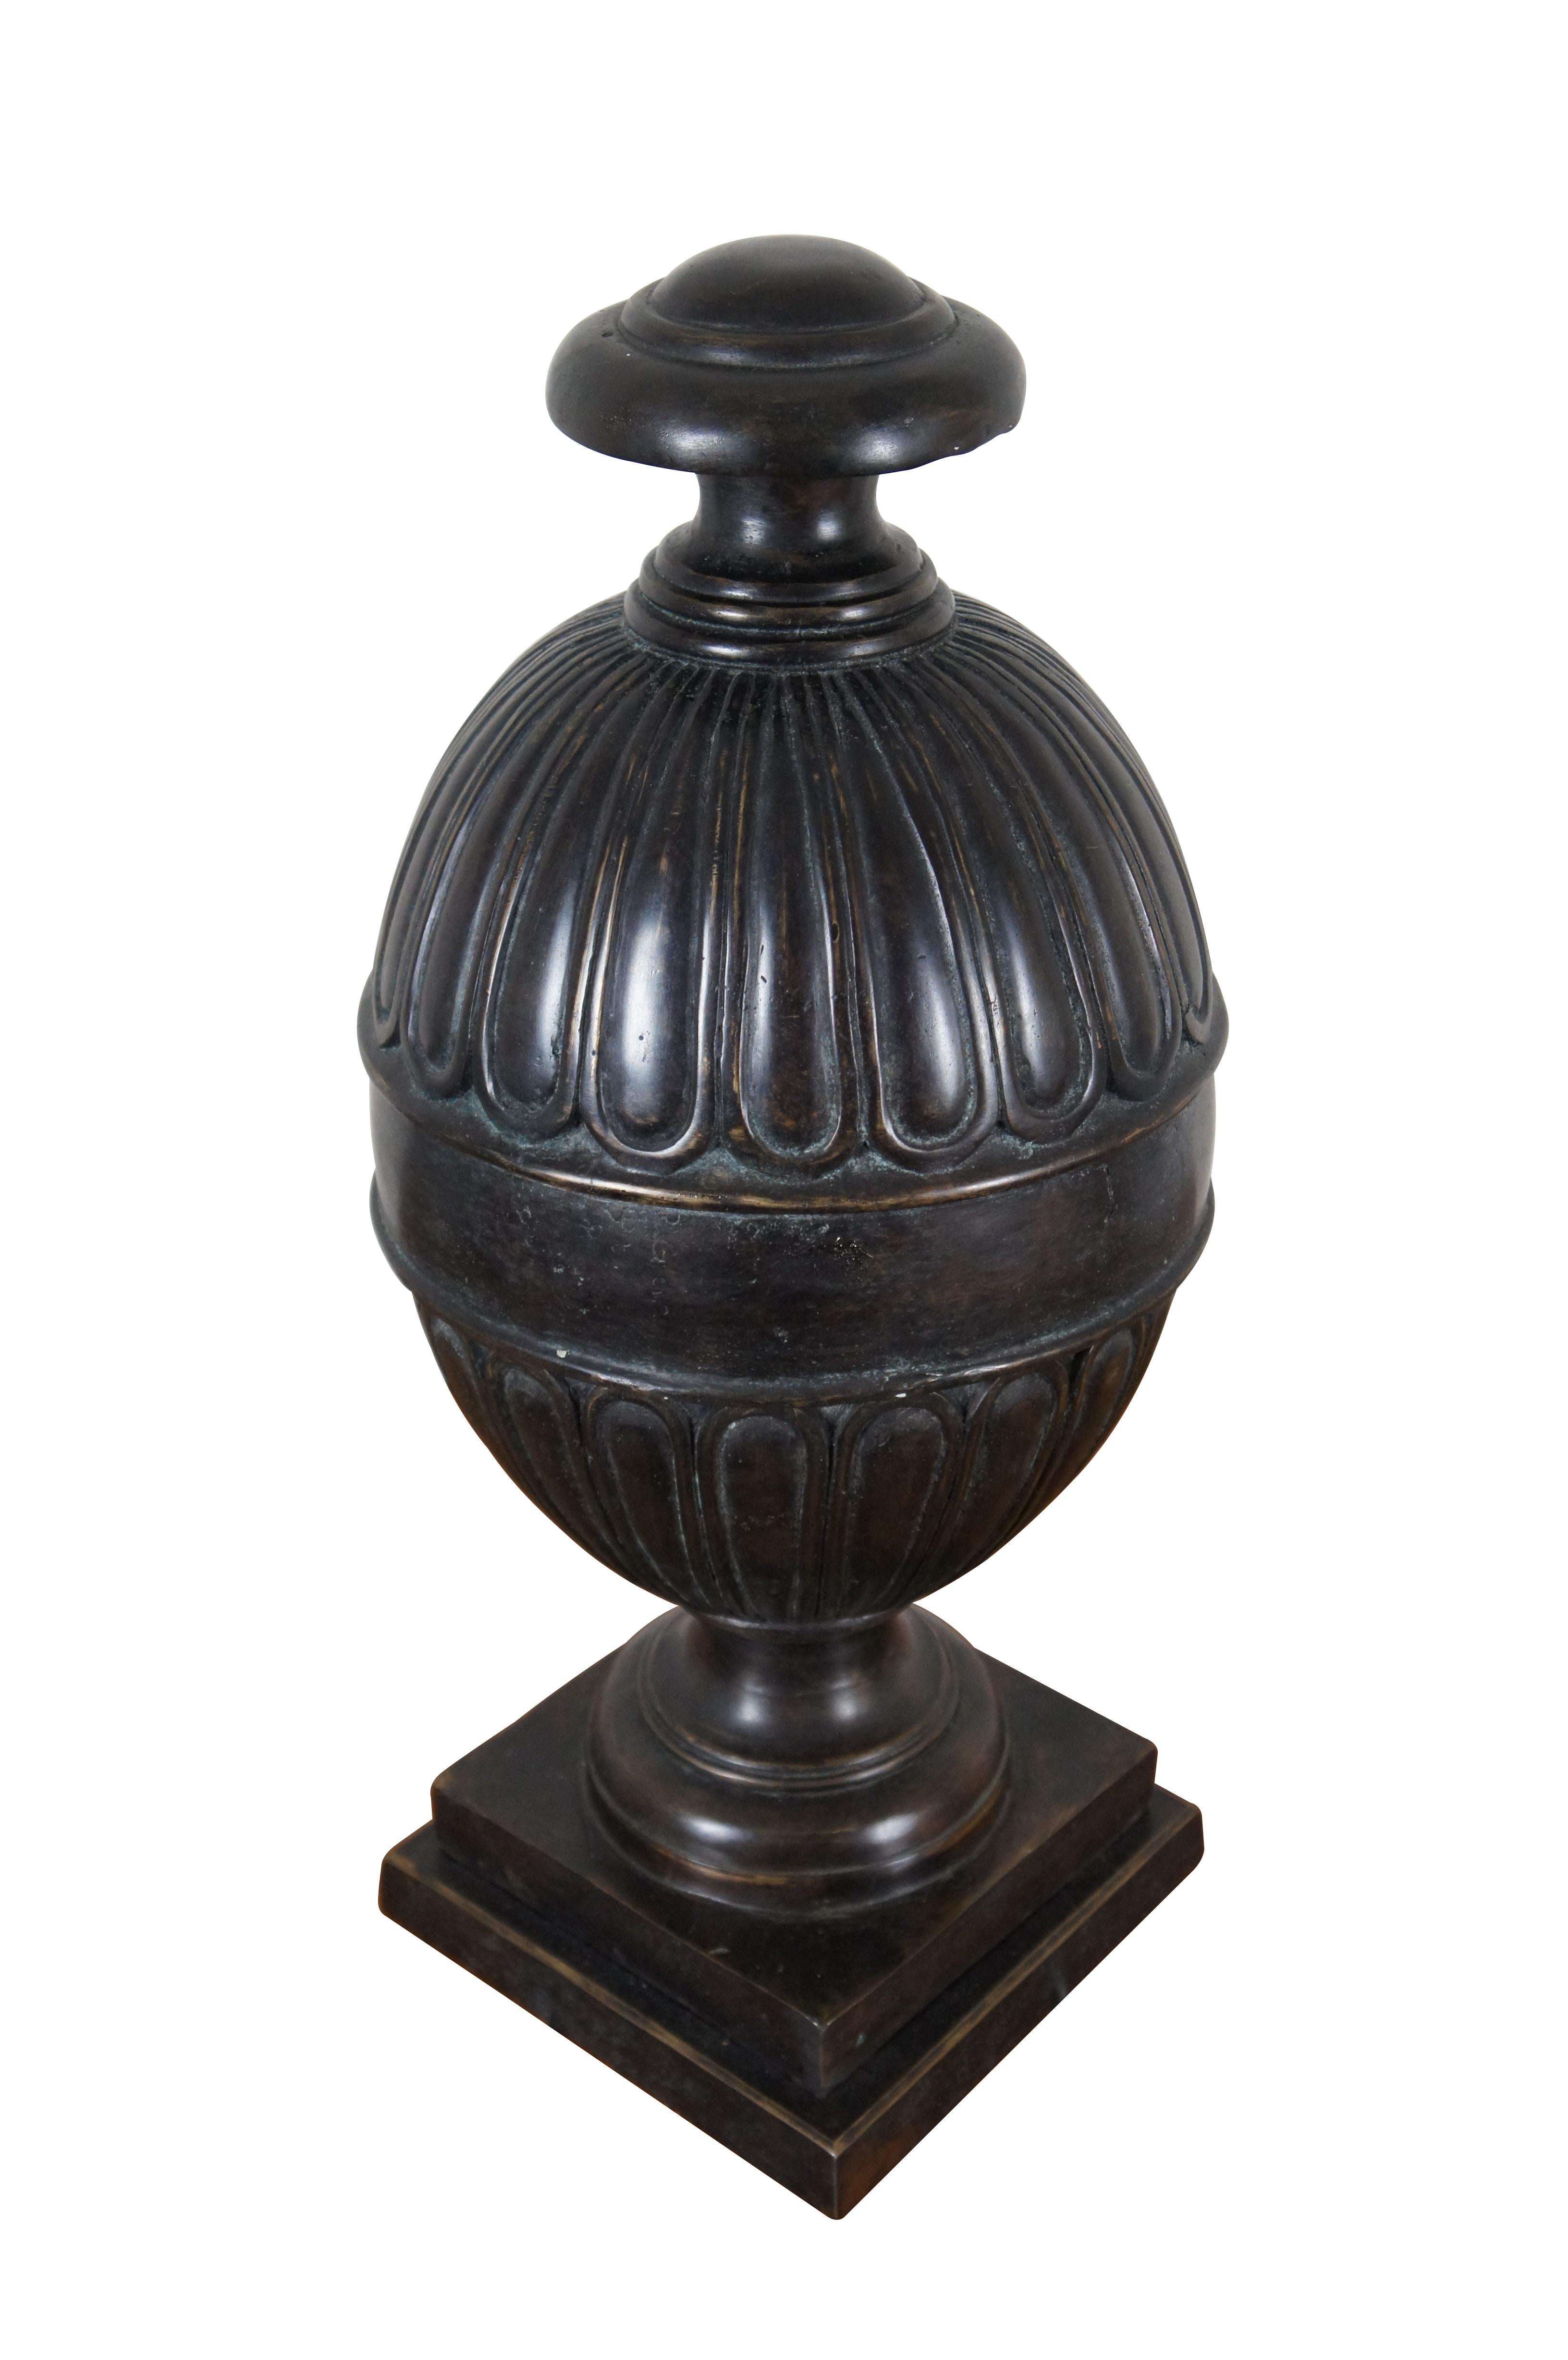 Vintage schwere Maitland Smith Bronze Kaminsims Urne / Vase oder Kompott mit neoklassischen Stil mit einem Fußsockel Basis unterstützt eine eiförmige Box / jar.

Abmessungen:
9,75